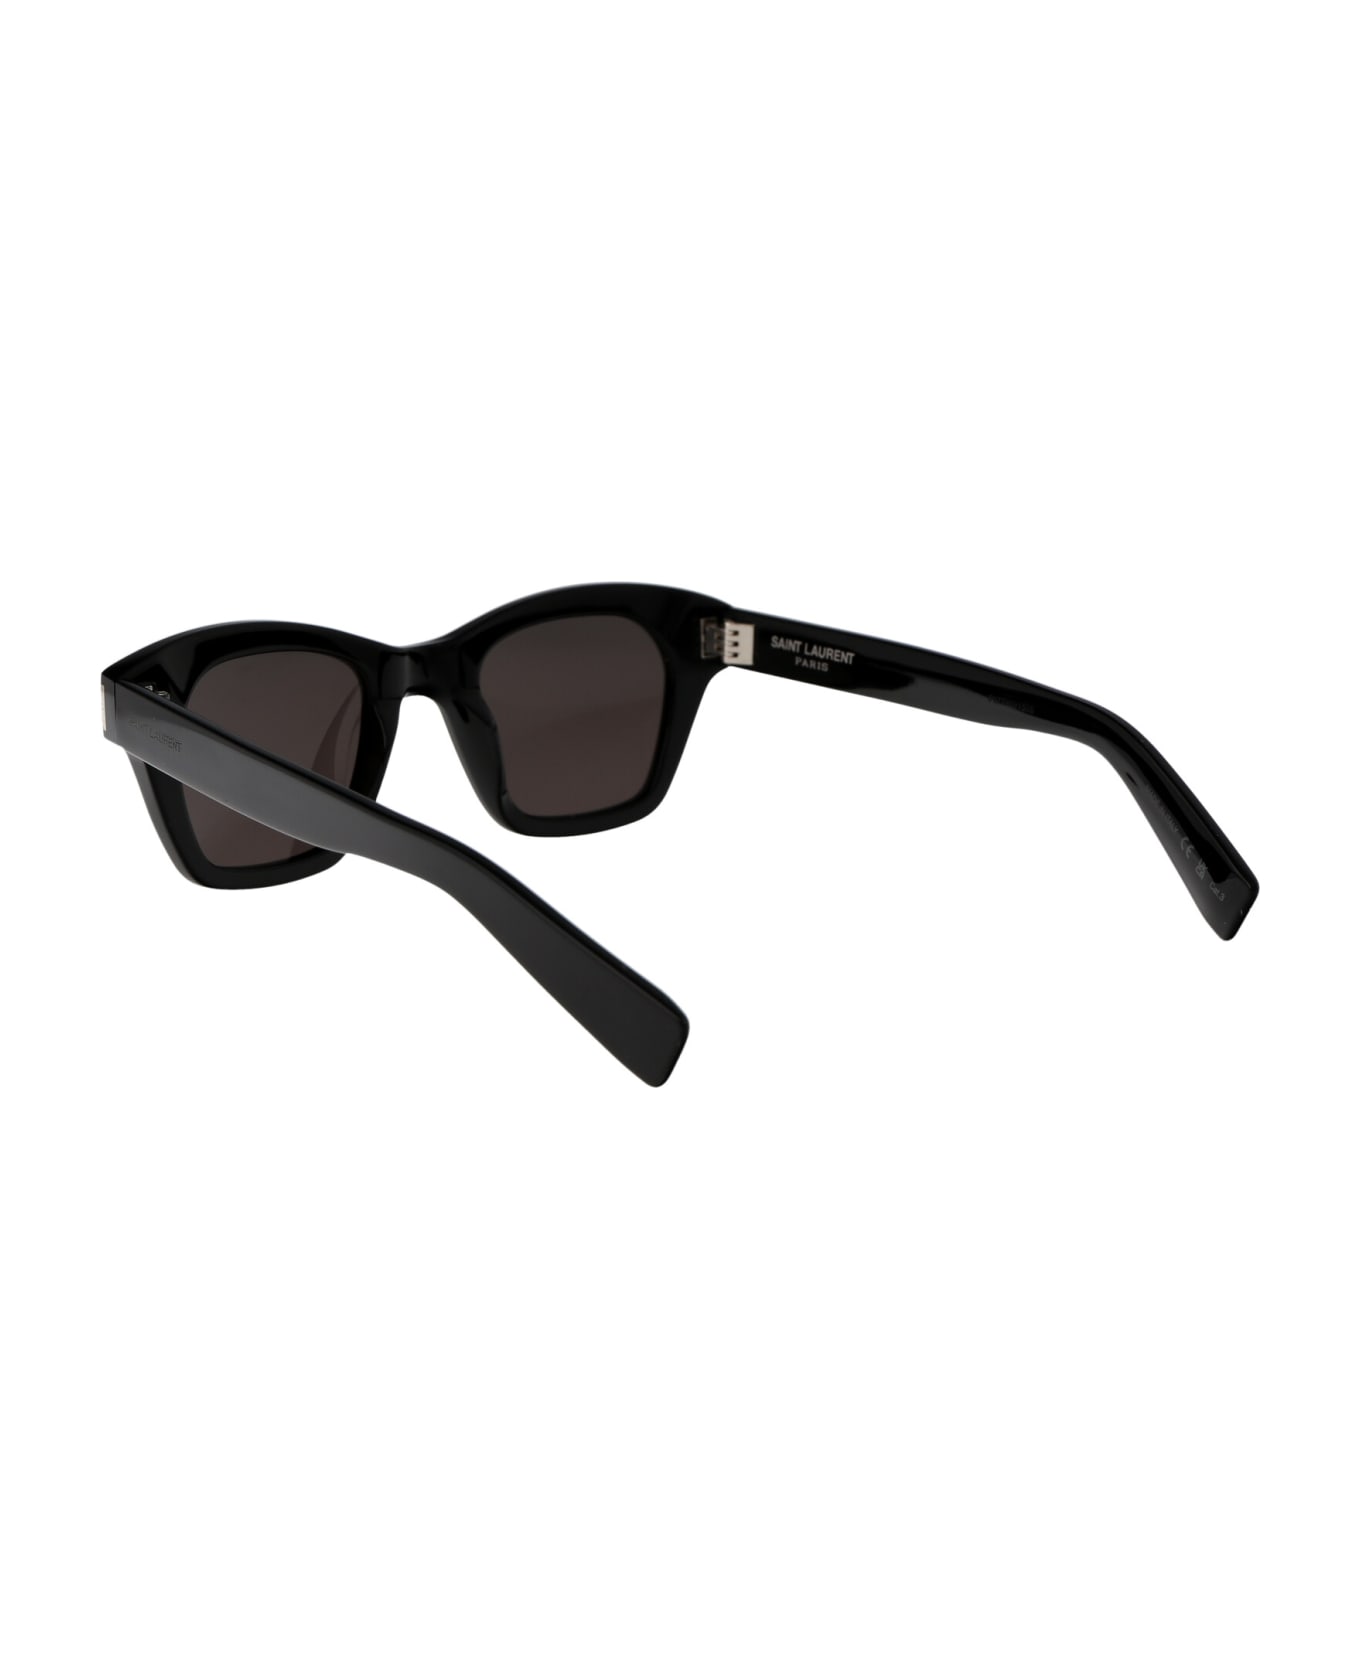 Saint Laurent Eyewear Sl 592 Sunglasses - 001 BLACK BLACK BLACK